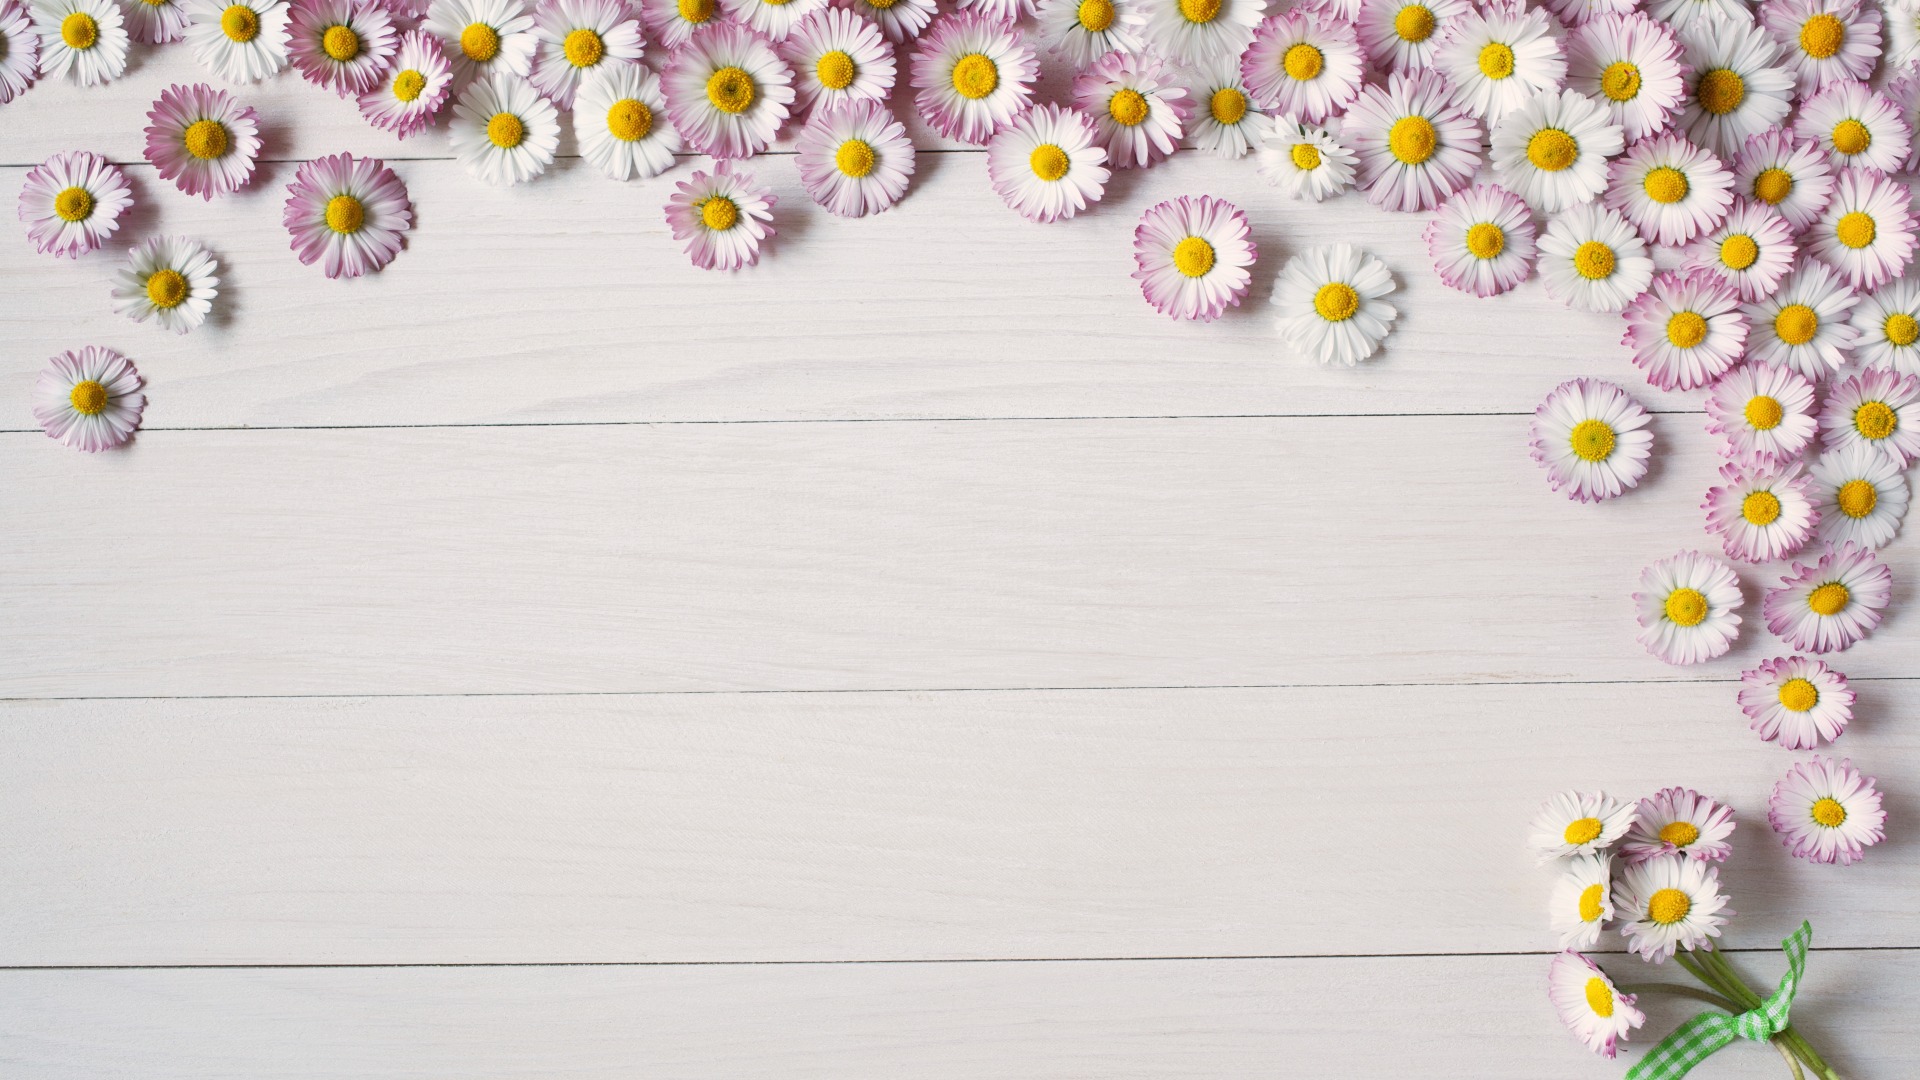 دانلود تصویر گلهای بابونه سفید بسیار زیبا و جذاب در کنار هم